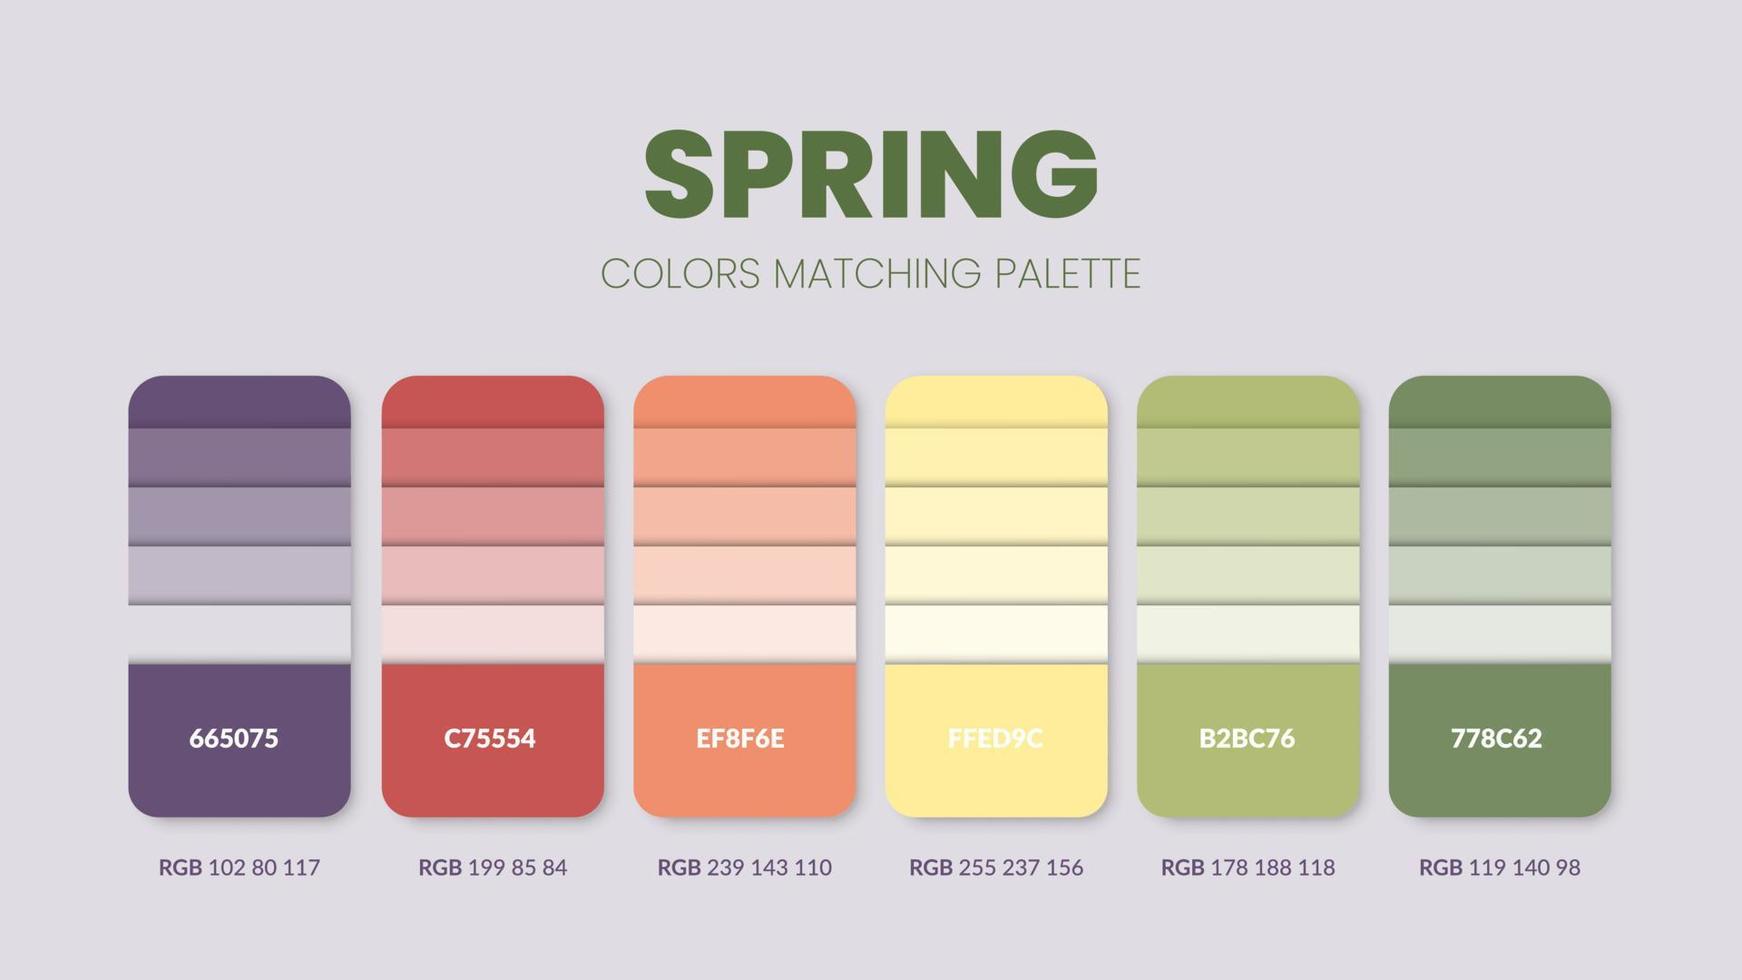 vårens färgpaletter eller färgscheman är trendkombinationer och palettguider i år bordsfärgnyanser i rgb eller hex. ett färgprov för en mjuk dag med mode, hem eller inredning vektor